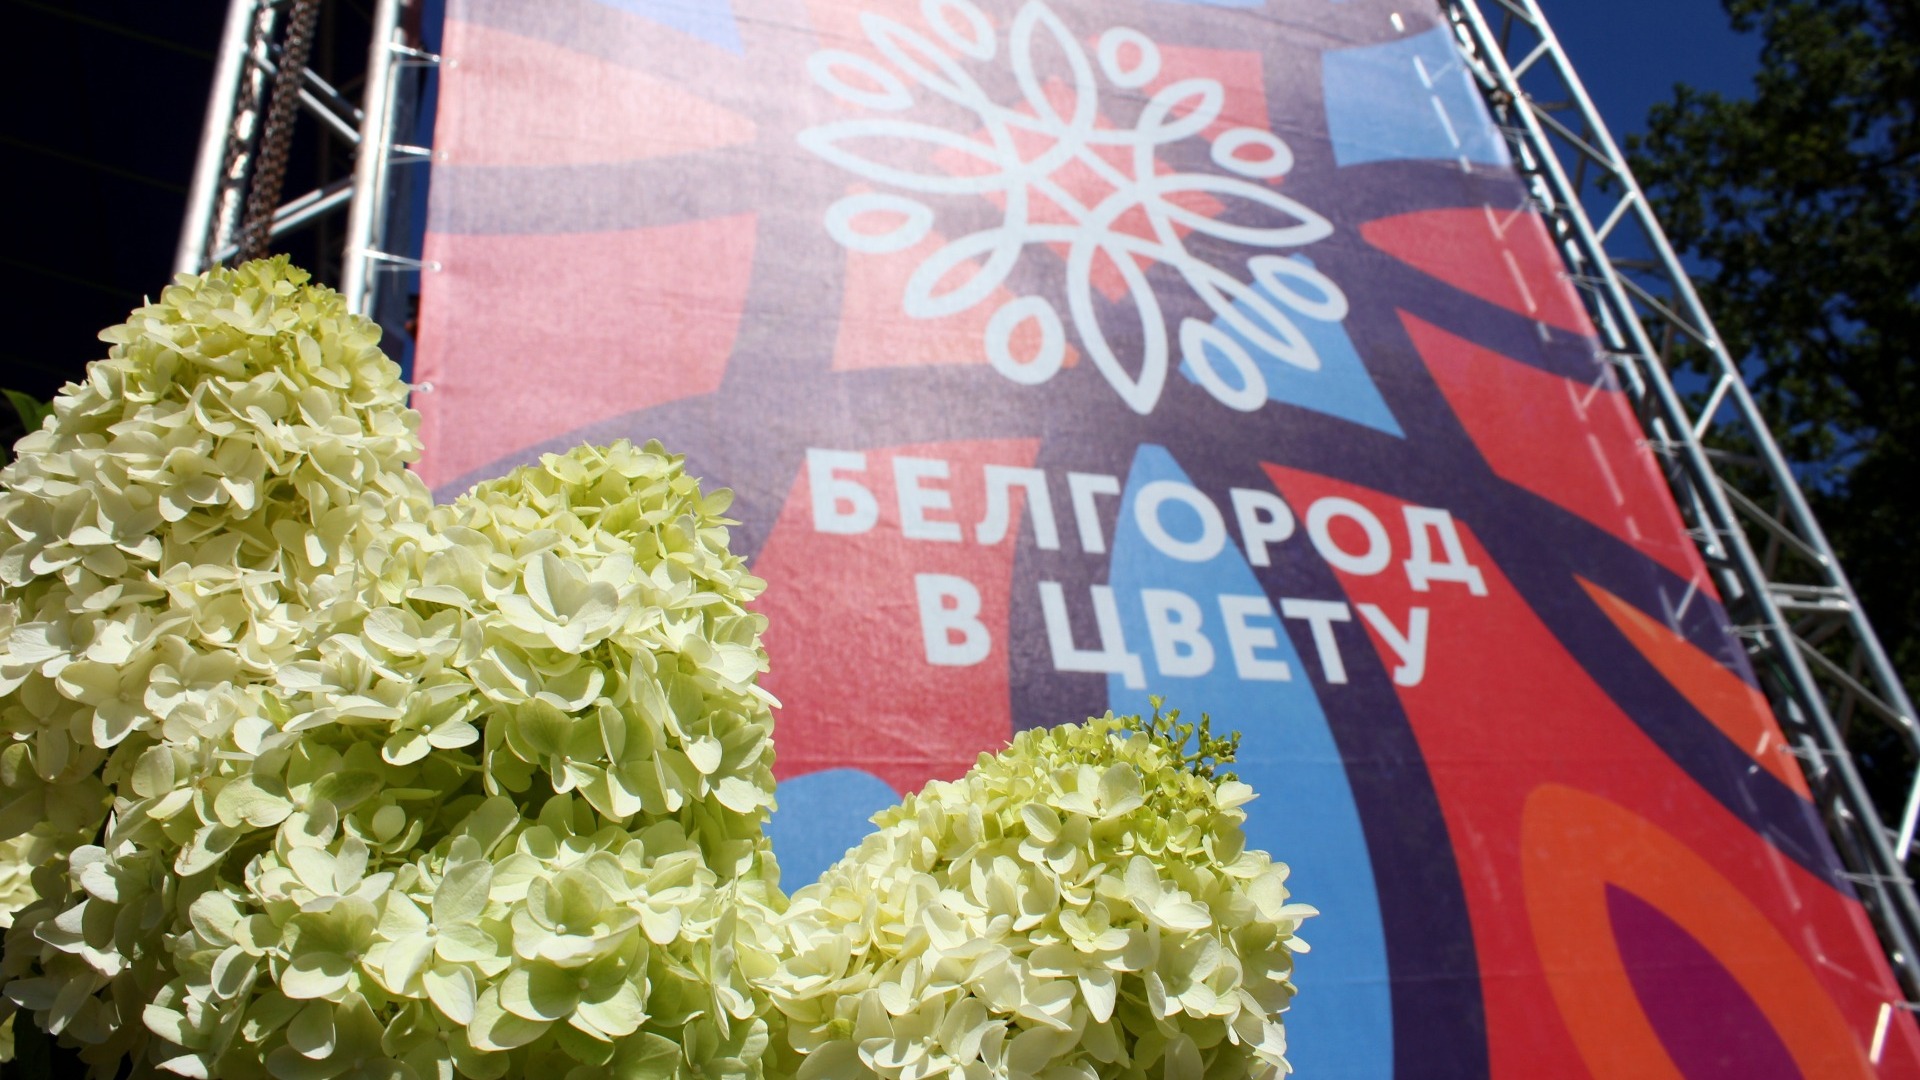 Гладкова попросили продлить фестиваль «Белгород в цвету» до пяти дней